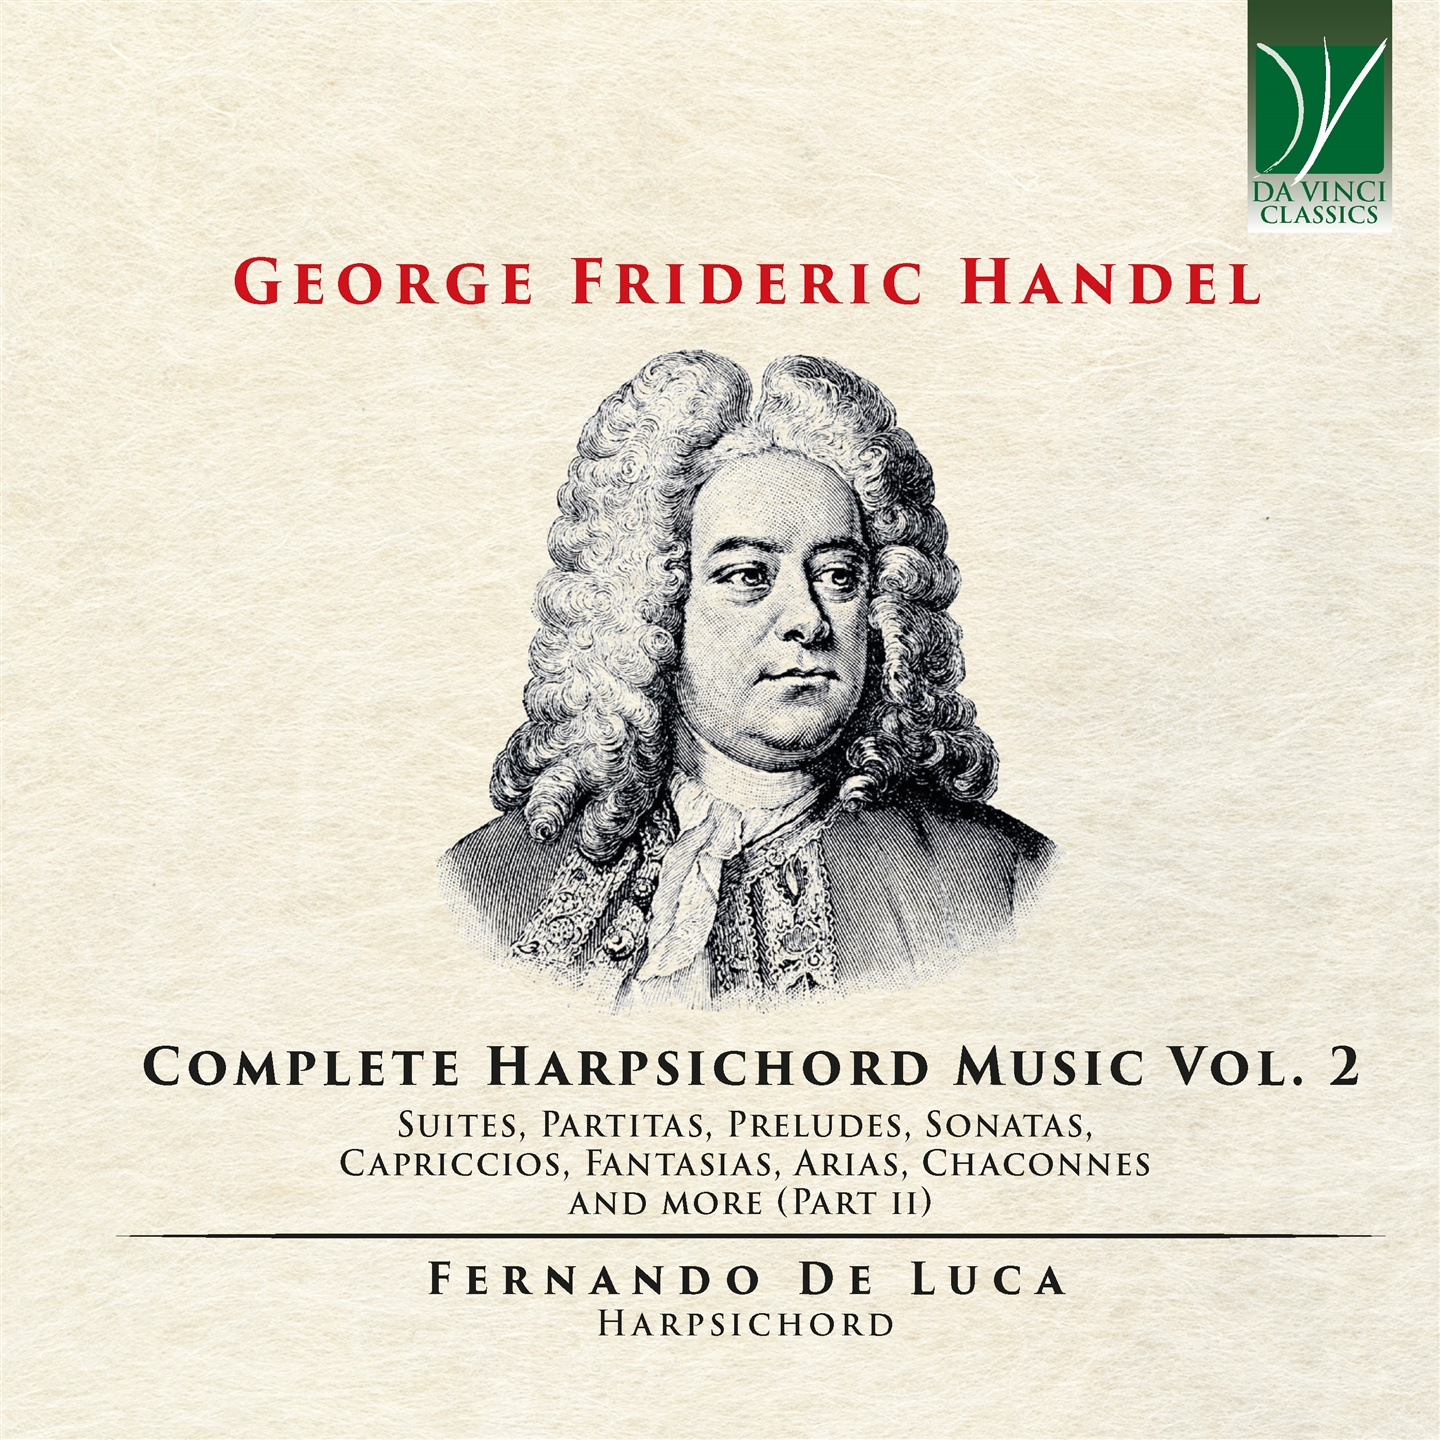 GEORGE FRIEDERIC HANDEL: COMPLETE HARPSICHORD MUSIC VOL. 2